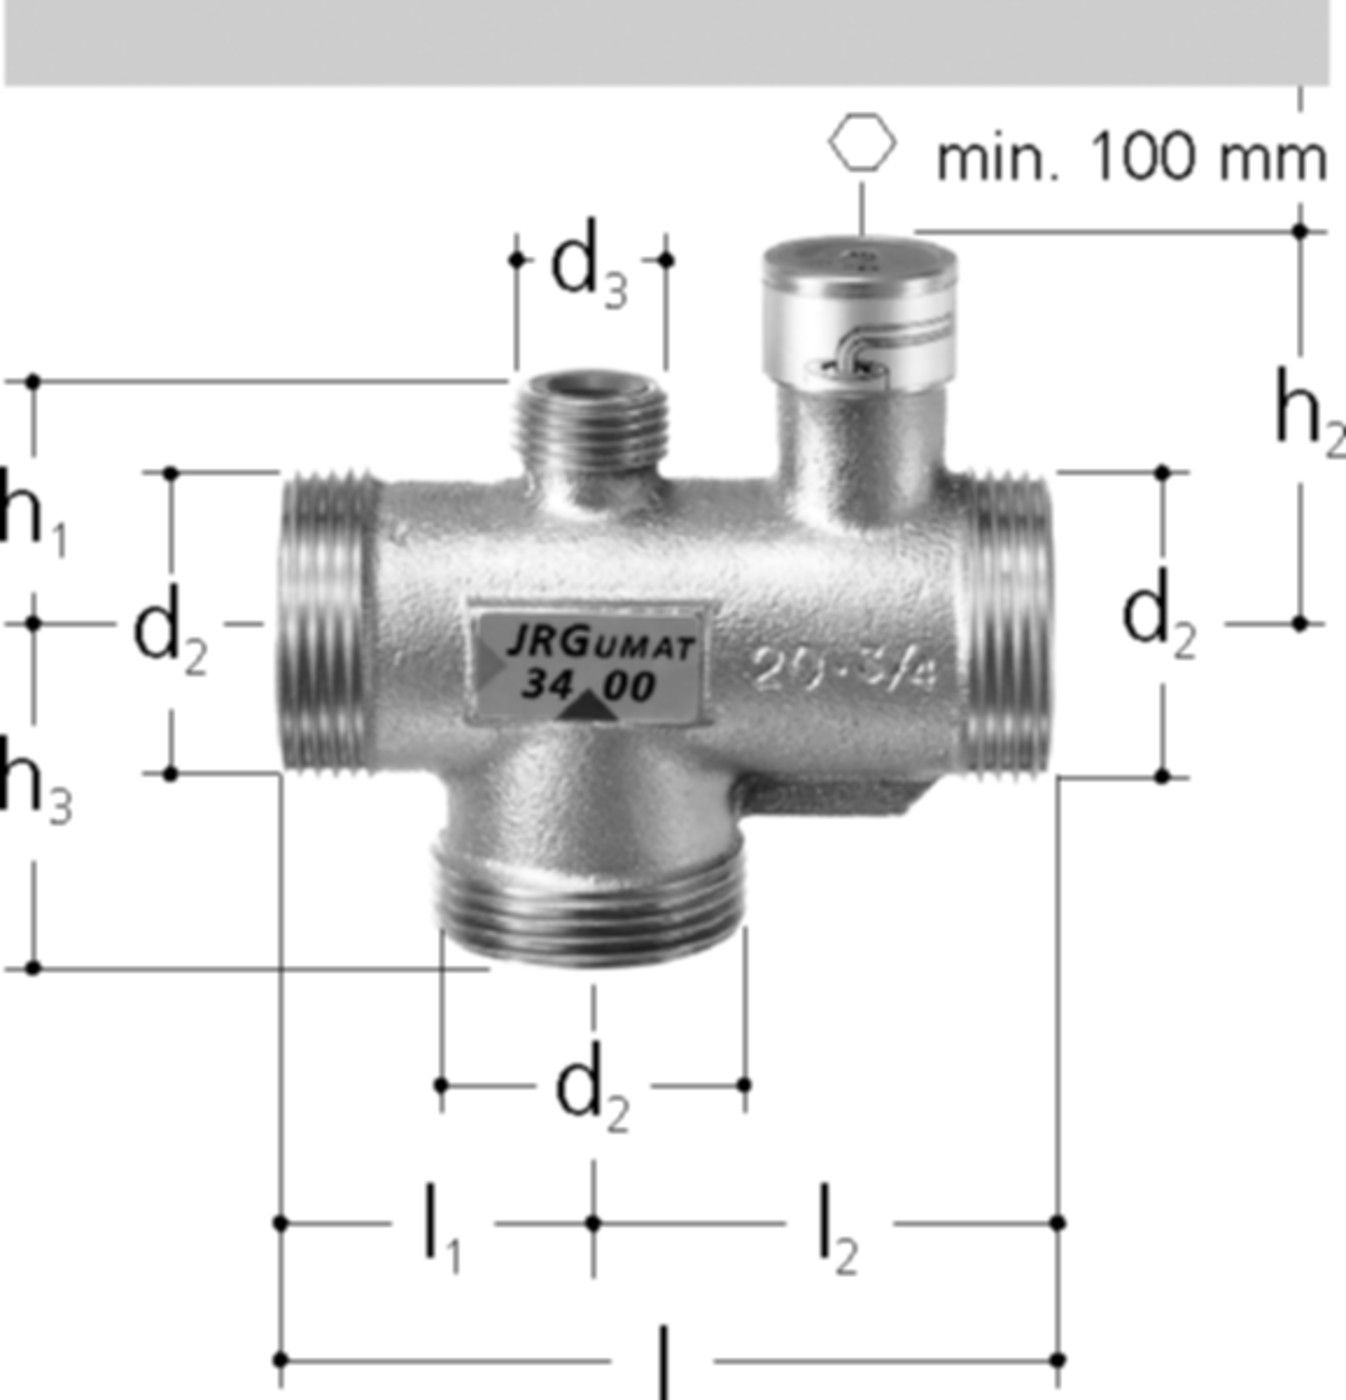 JRGUMAT Thermomischer PN 10 1" DN 25 40°C 3400.932 - JRG Armaturen